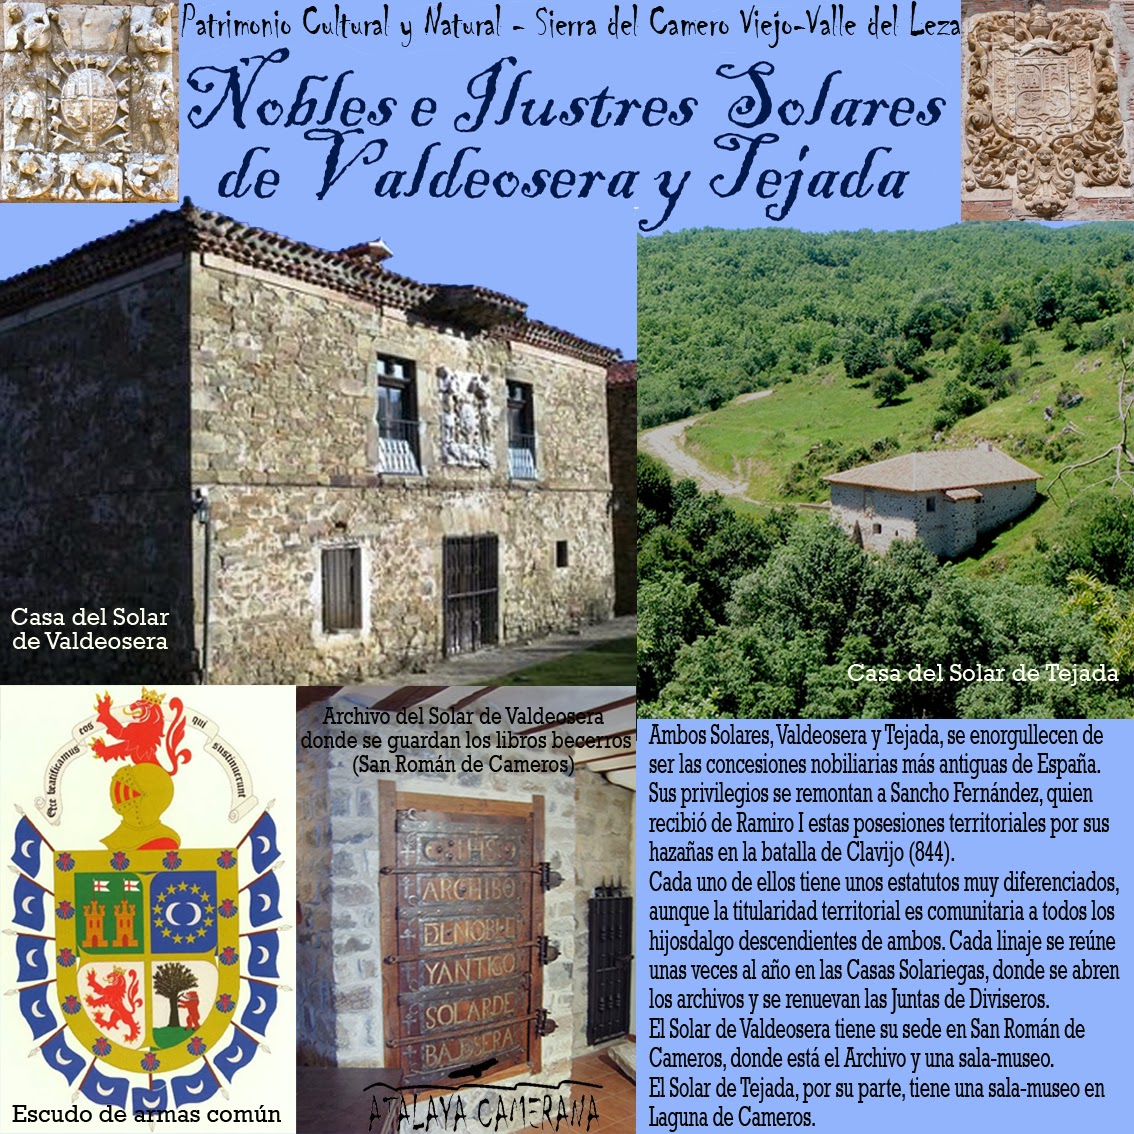 Sierra del Camero Viejo: Patrimonio Cultural y Natural. Nobles e Ilustres Solares de Tejada y Valdeosera.